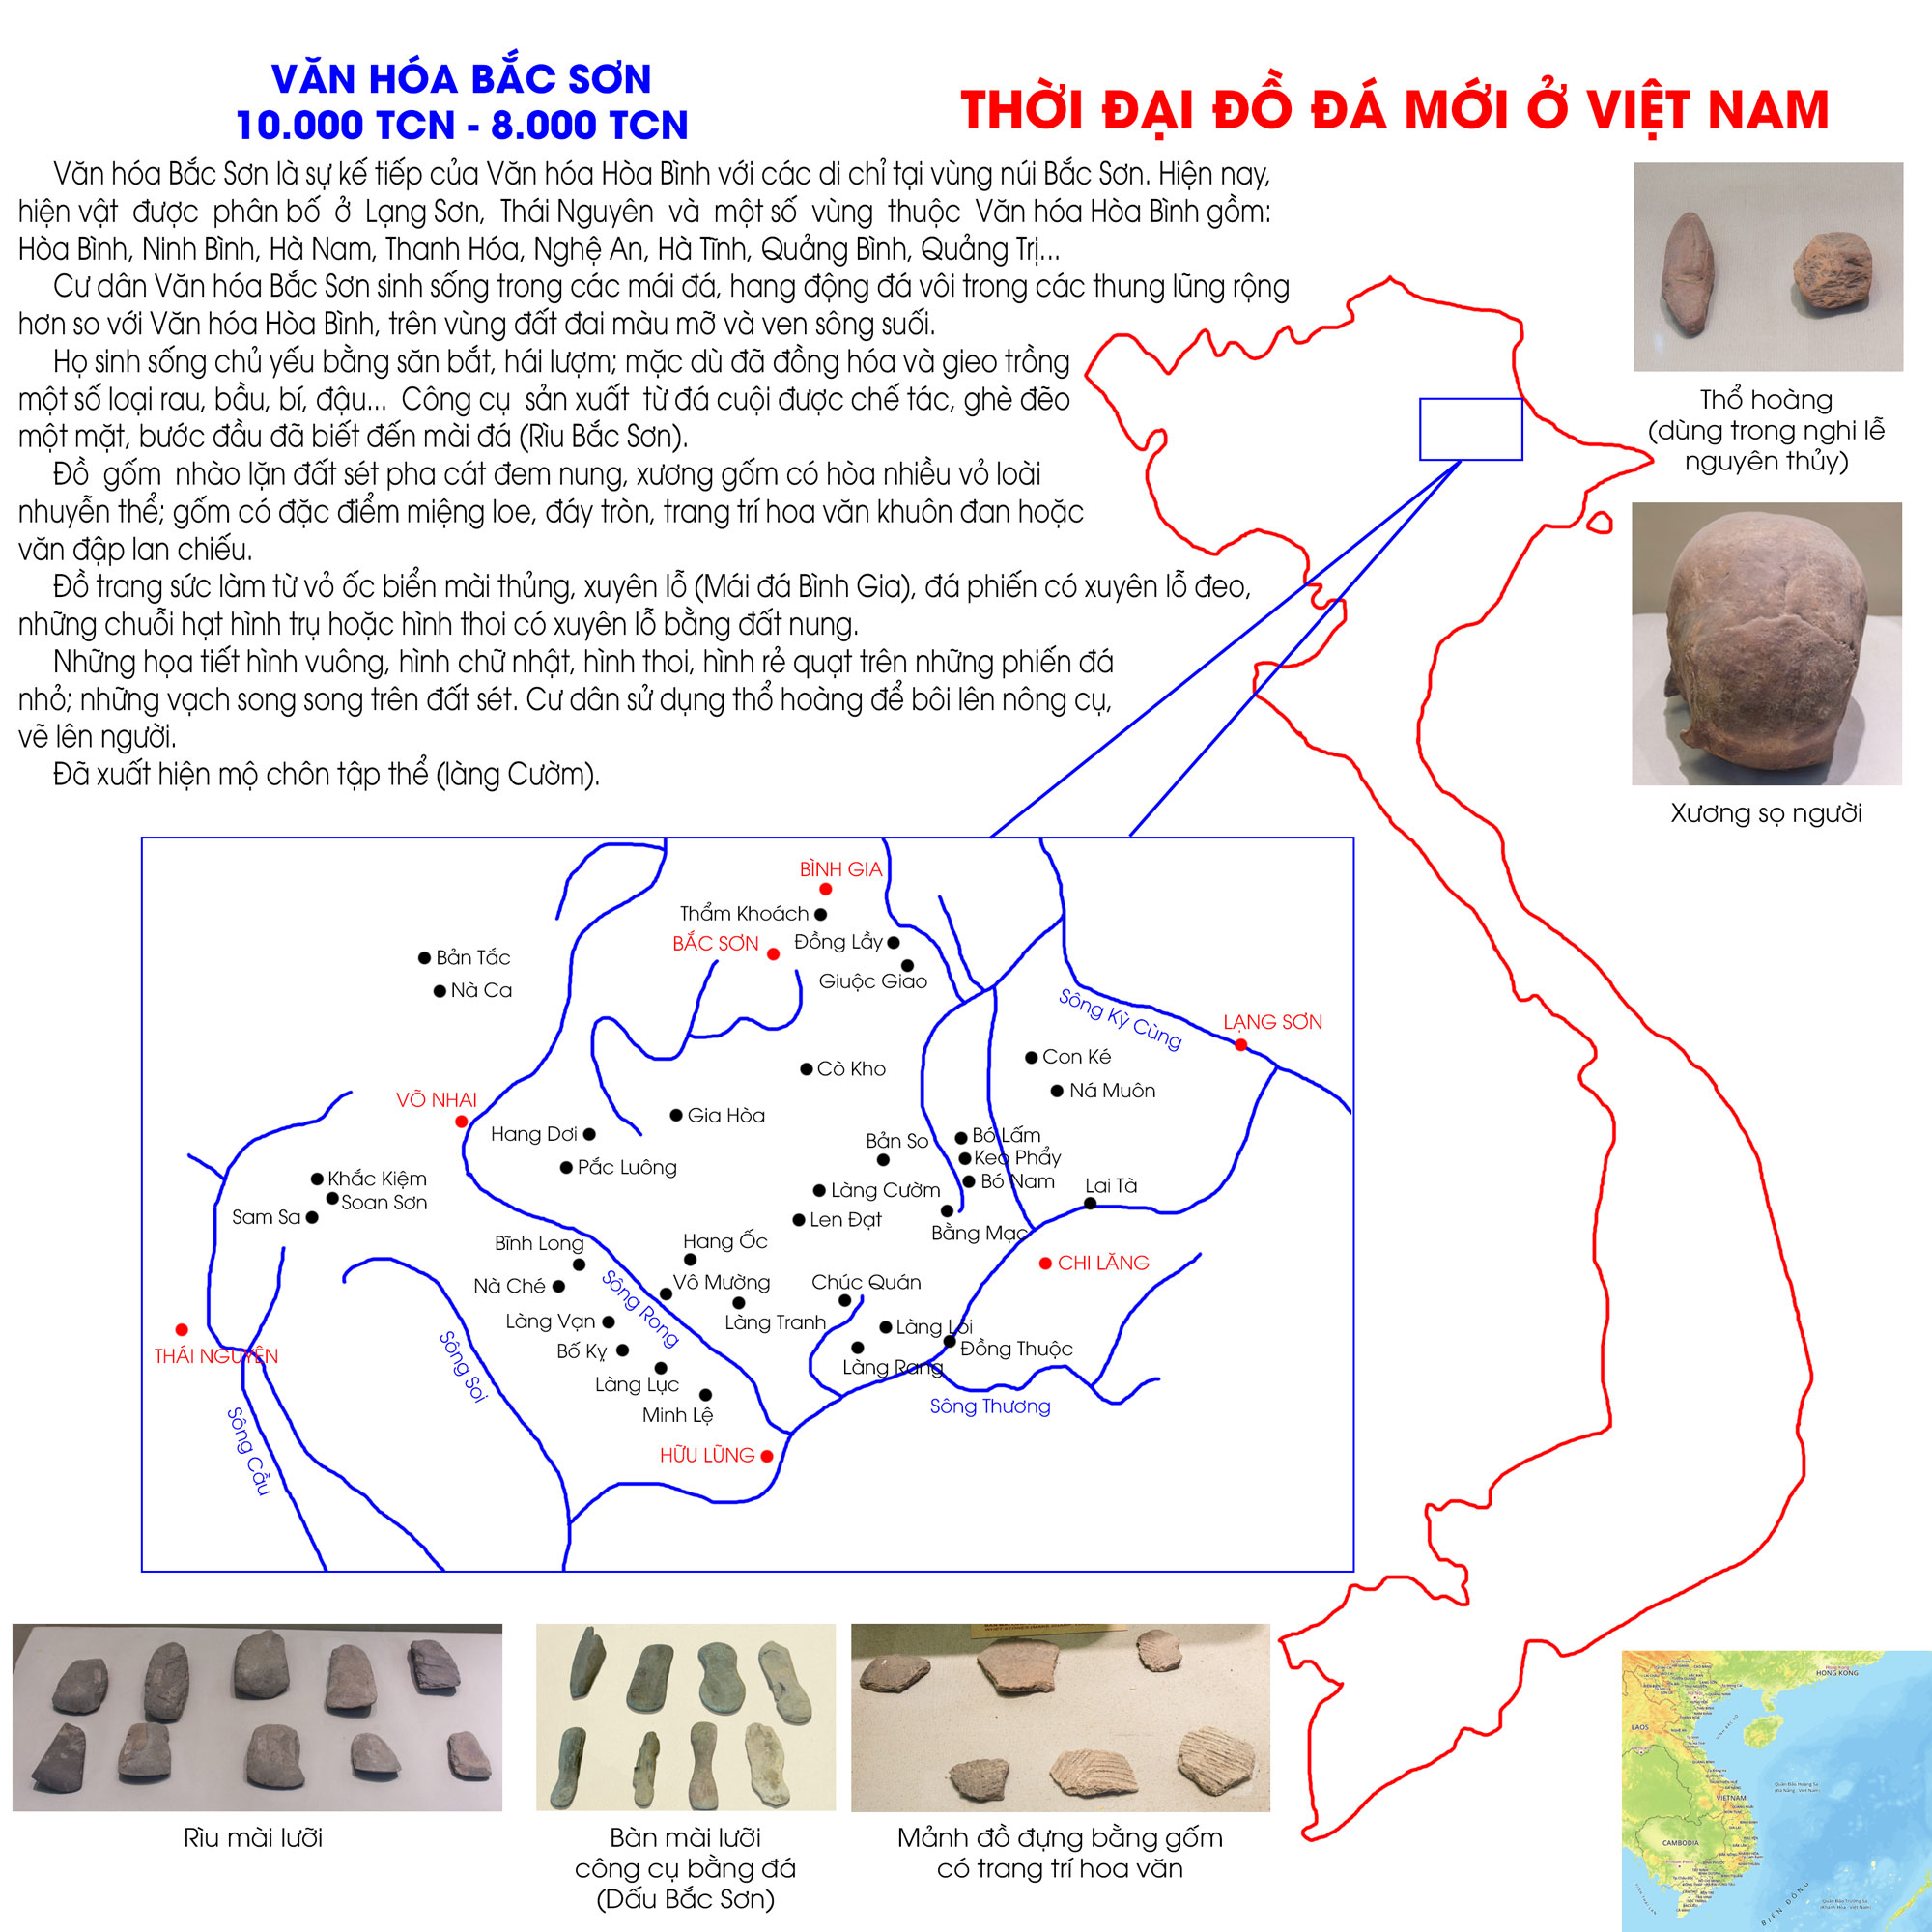 Thời đại đồ đá mới ở Việt Nam - Văn hóa Bắc Sơn